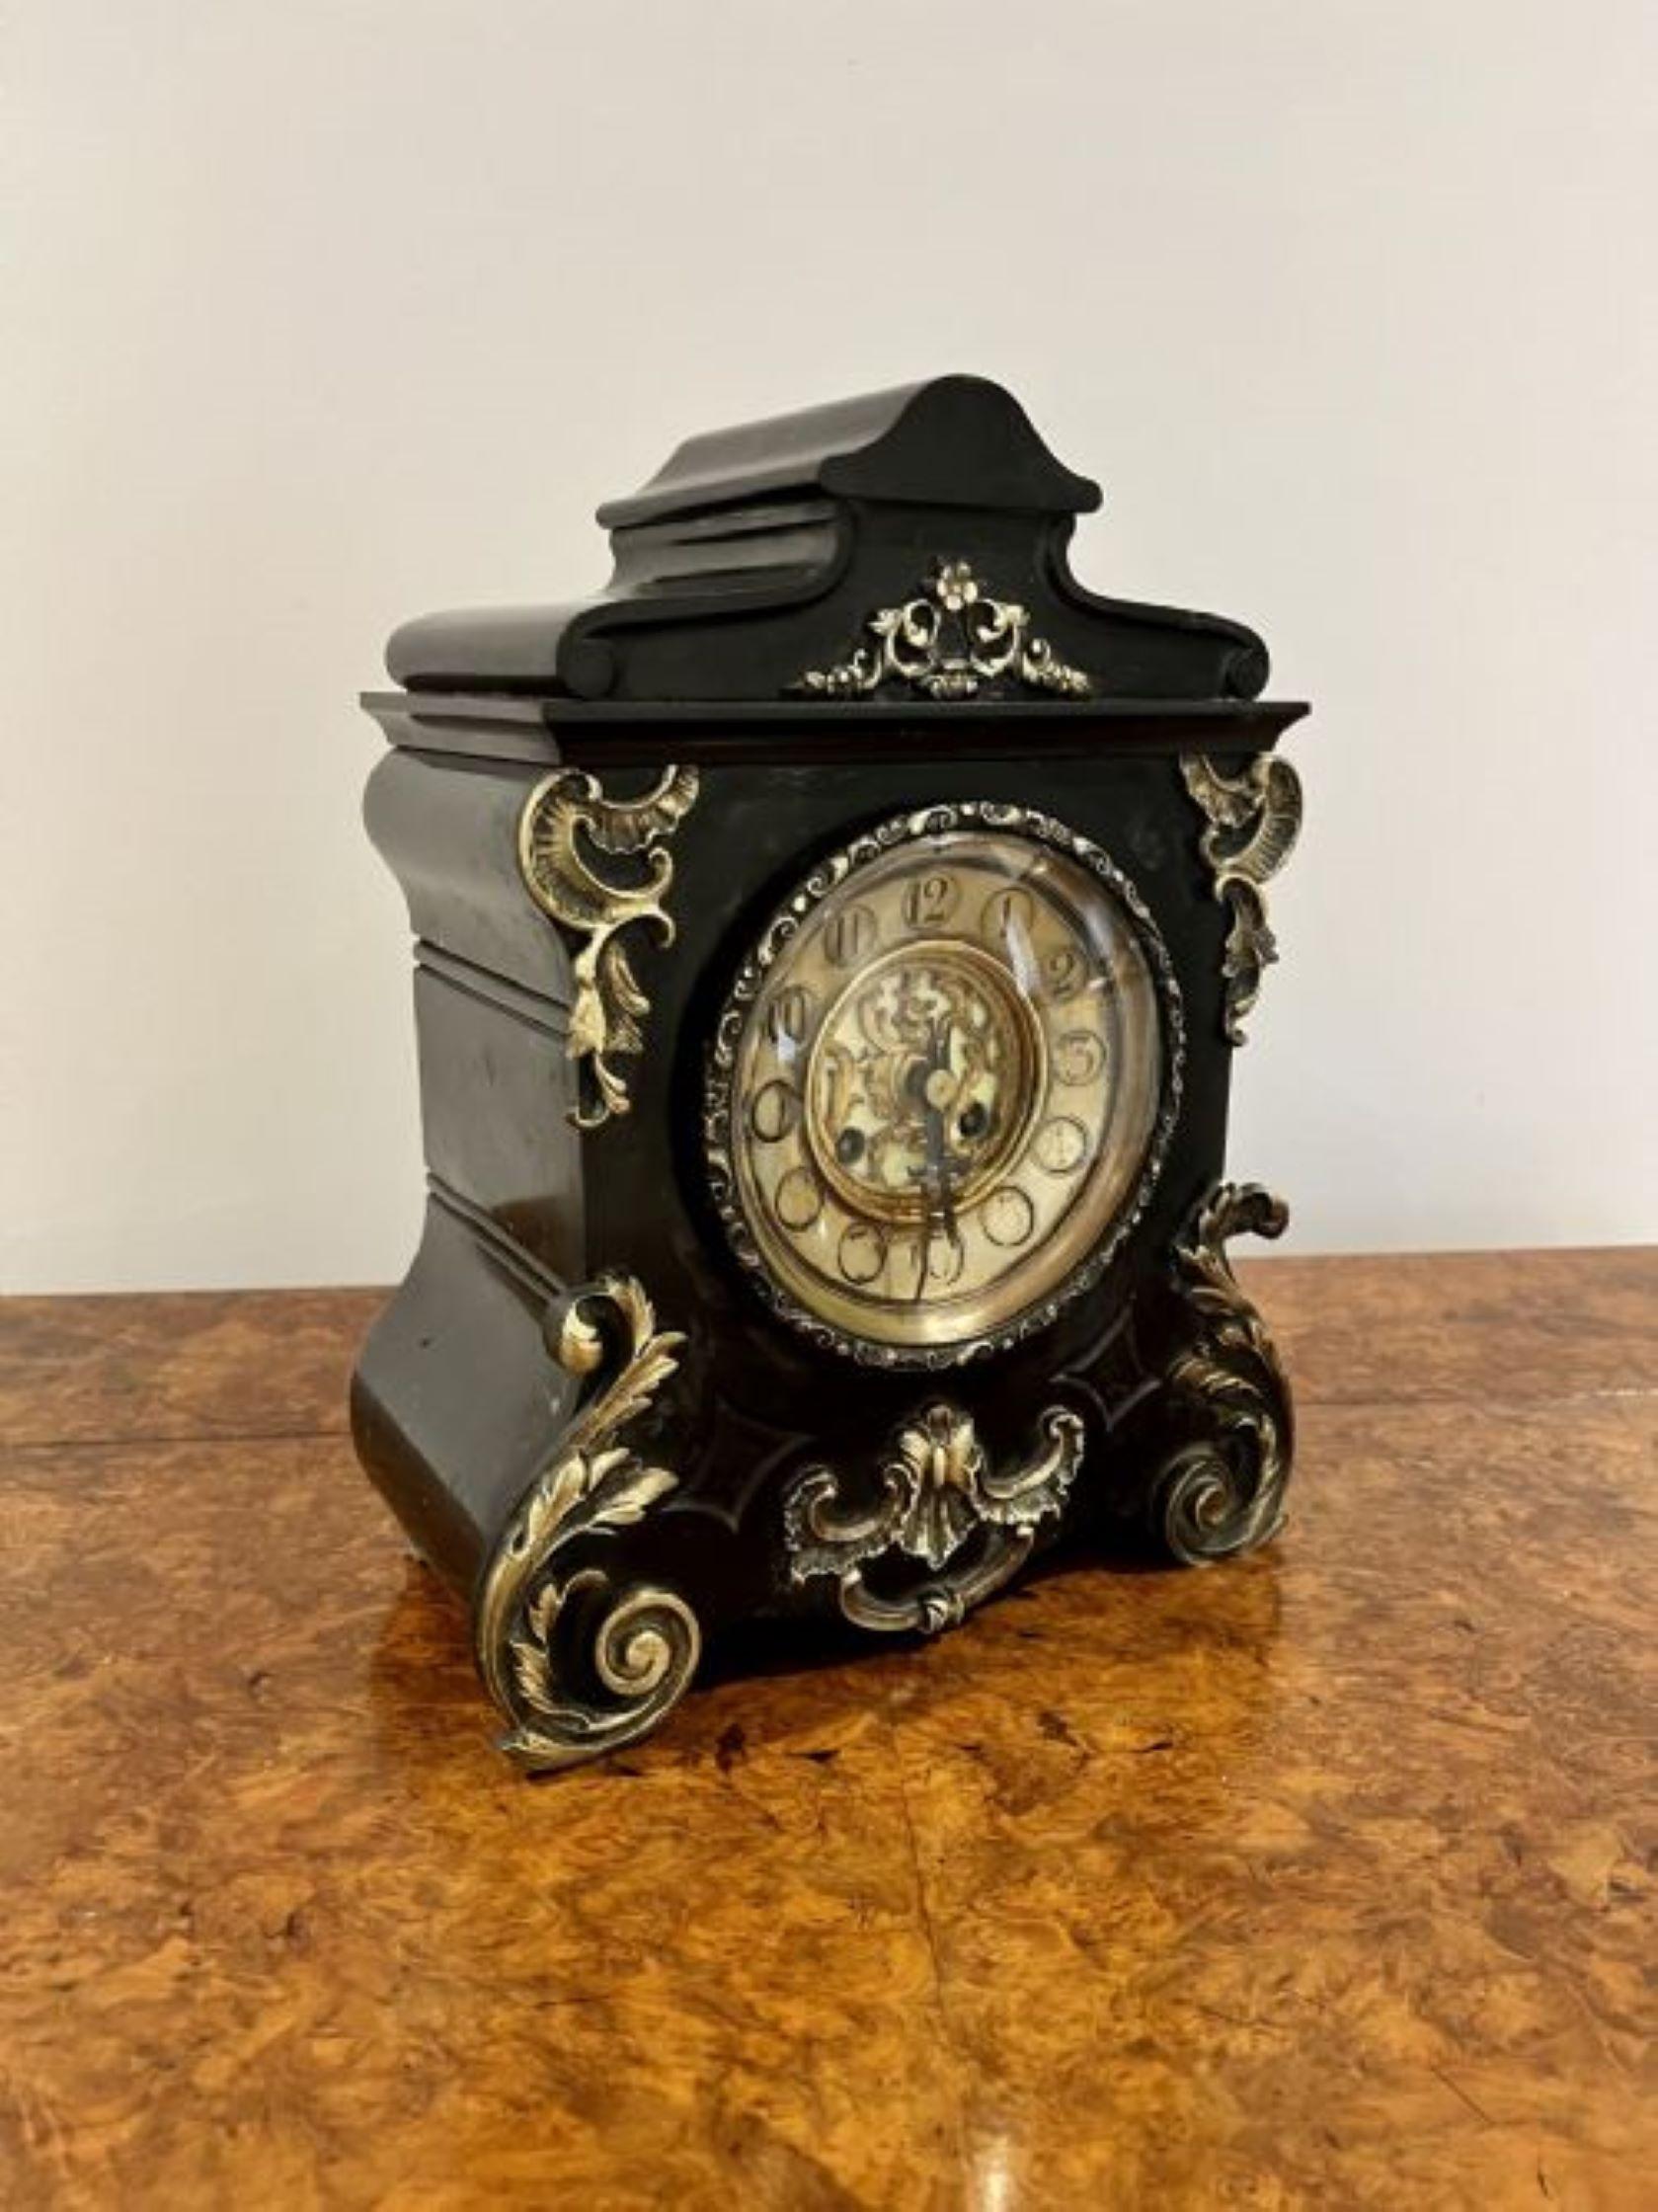 Ancienne horloge de manteau victorienne en marbre noir de qualité avec des montures en laiton doré, un cadran circulaire en laiton orné avec les aiguilles d'origine, un mouvement français de huit jours sonnant l'heure sur un gong avec la clé et le